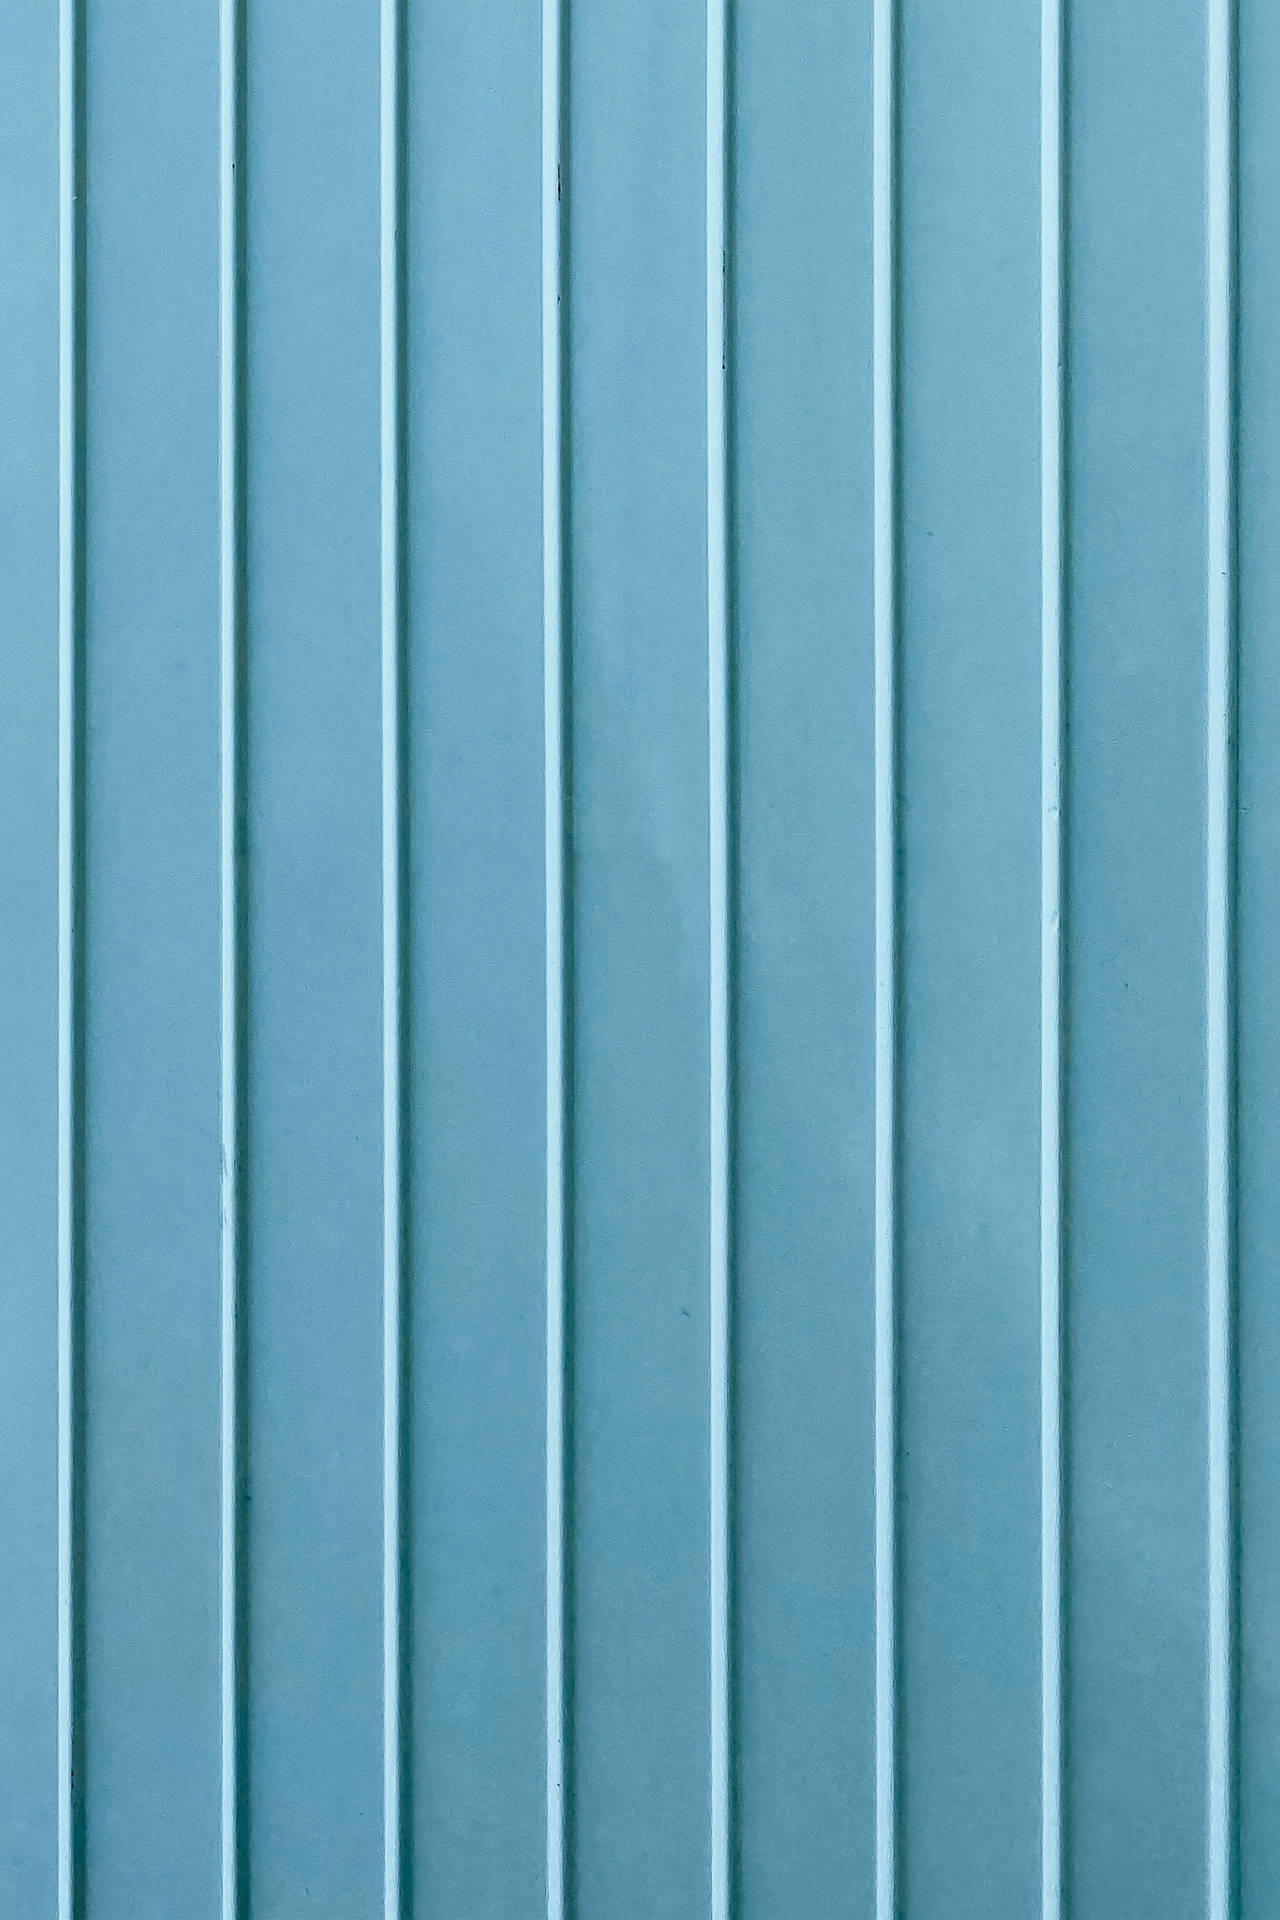 Corrugated Light Blue Aesthetic Background